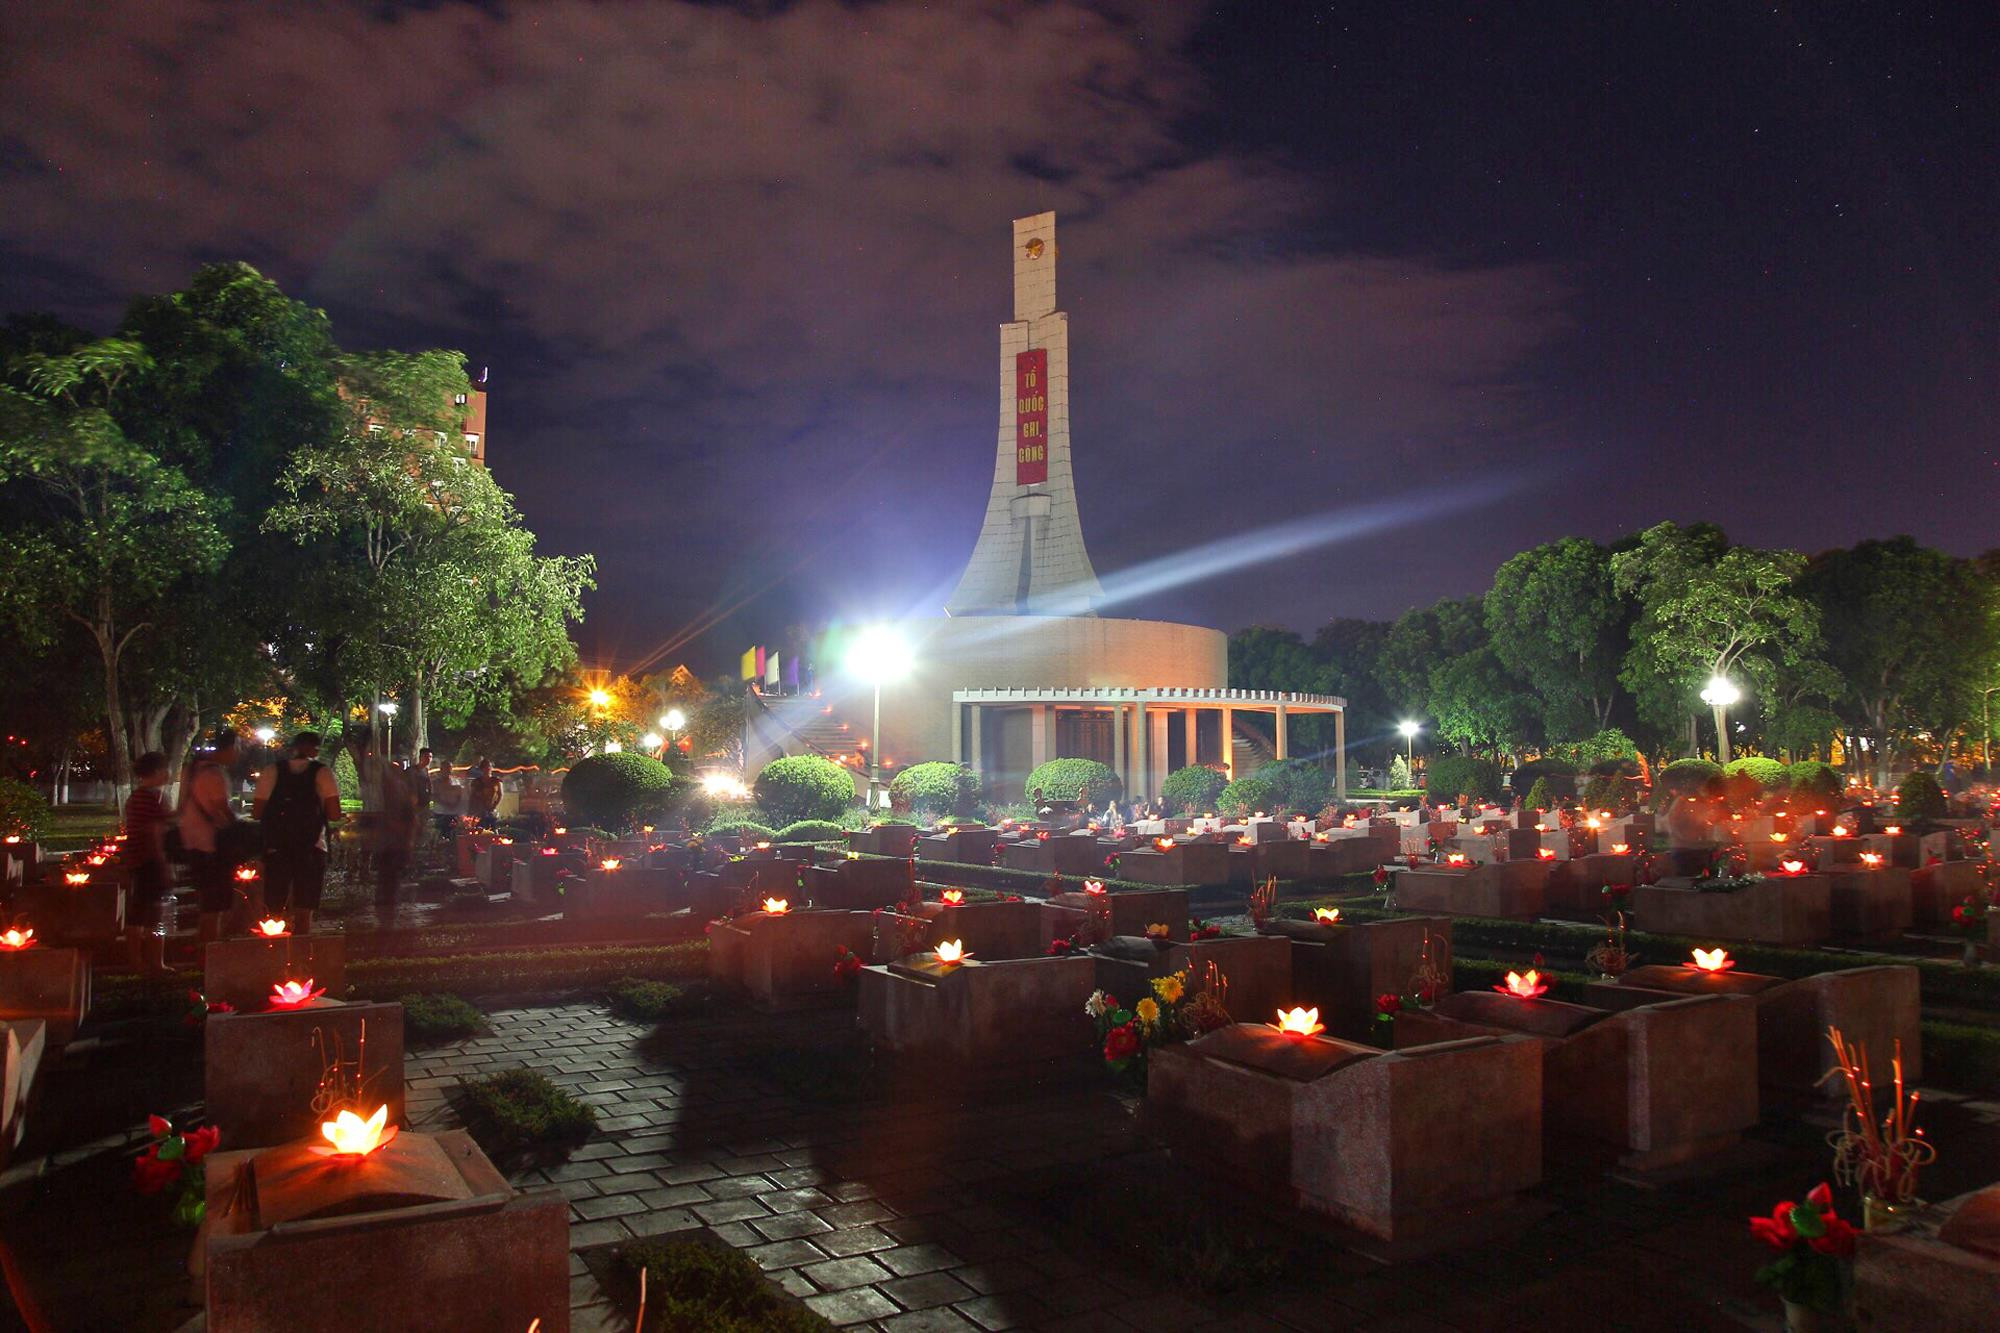 Nghĩa trang liệt sĩ thành phố Vinh là nơi yên nghỉ của hơn 1.000 anh hùng, liệt sỹ, trong đó có 781 liệt sĩ có danh tính. Ảnh: Lê Thắng